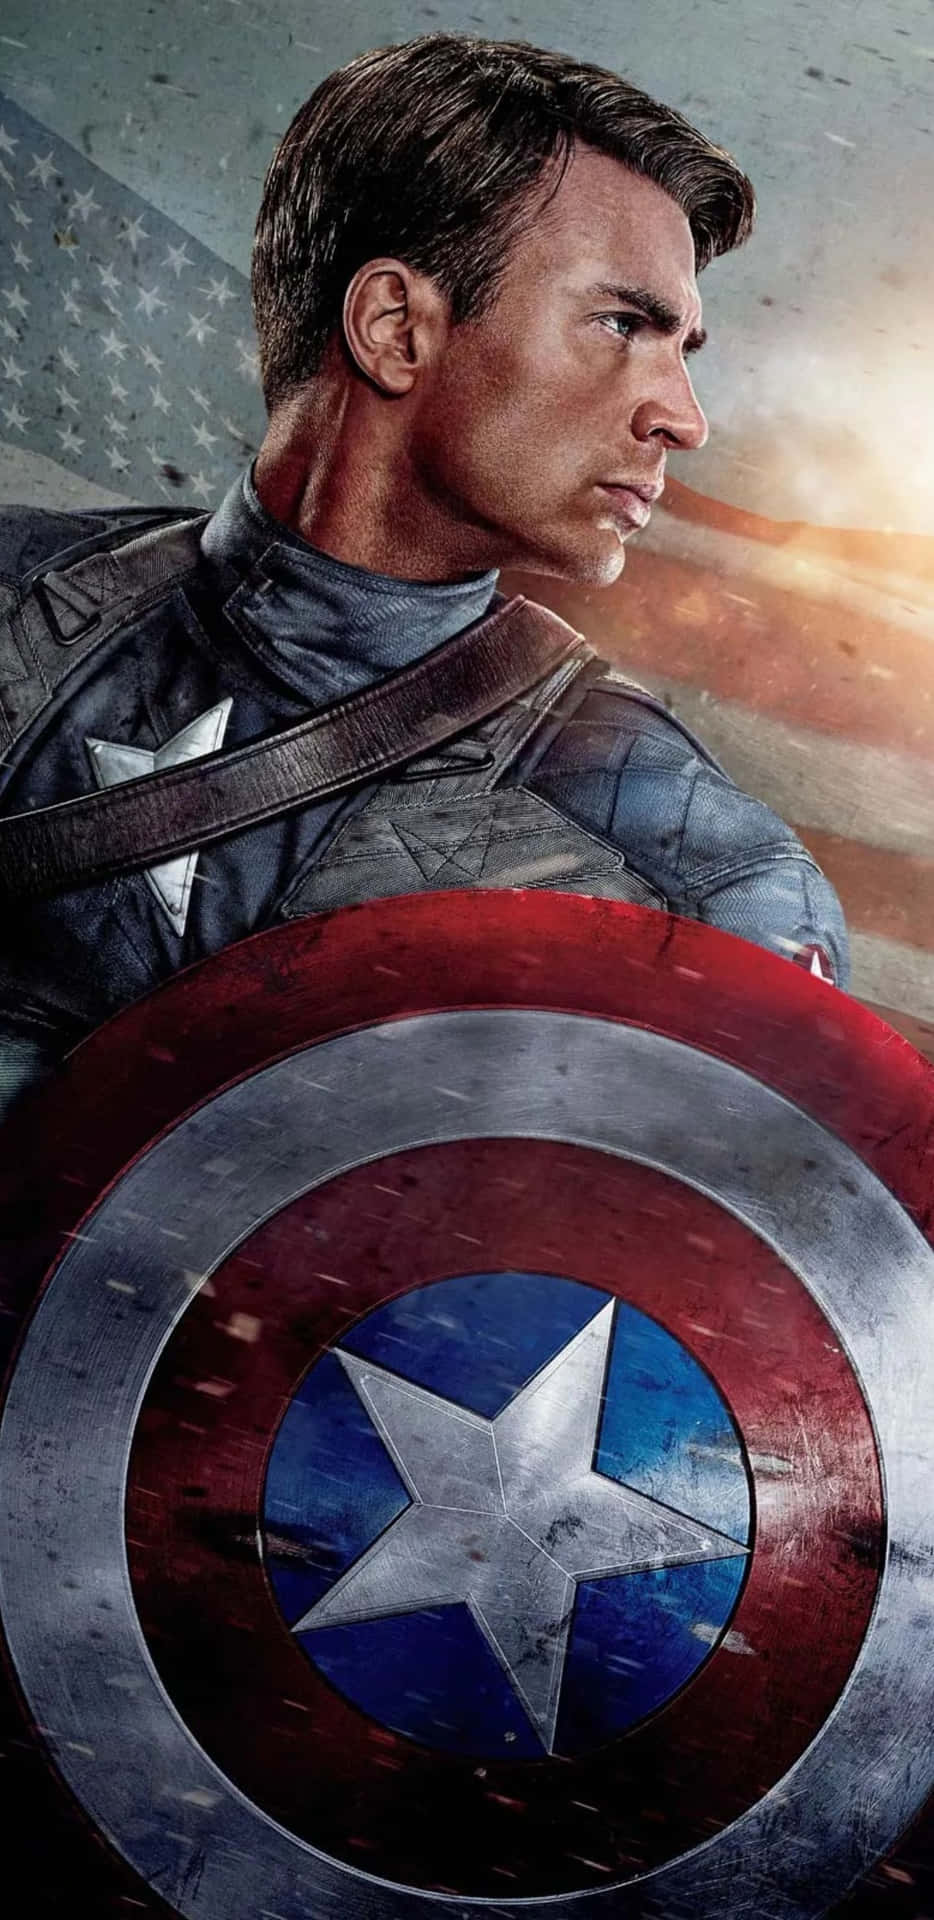 Fondode Pantalla De Pixel 3xl De Capitán América, El Primer Vengador.